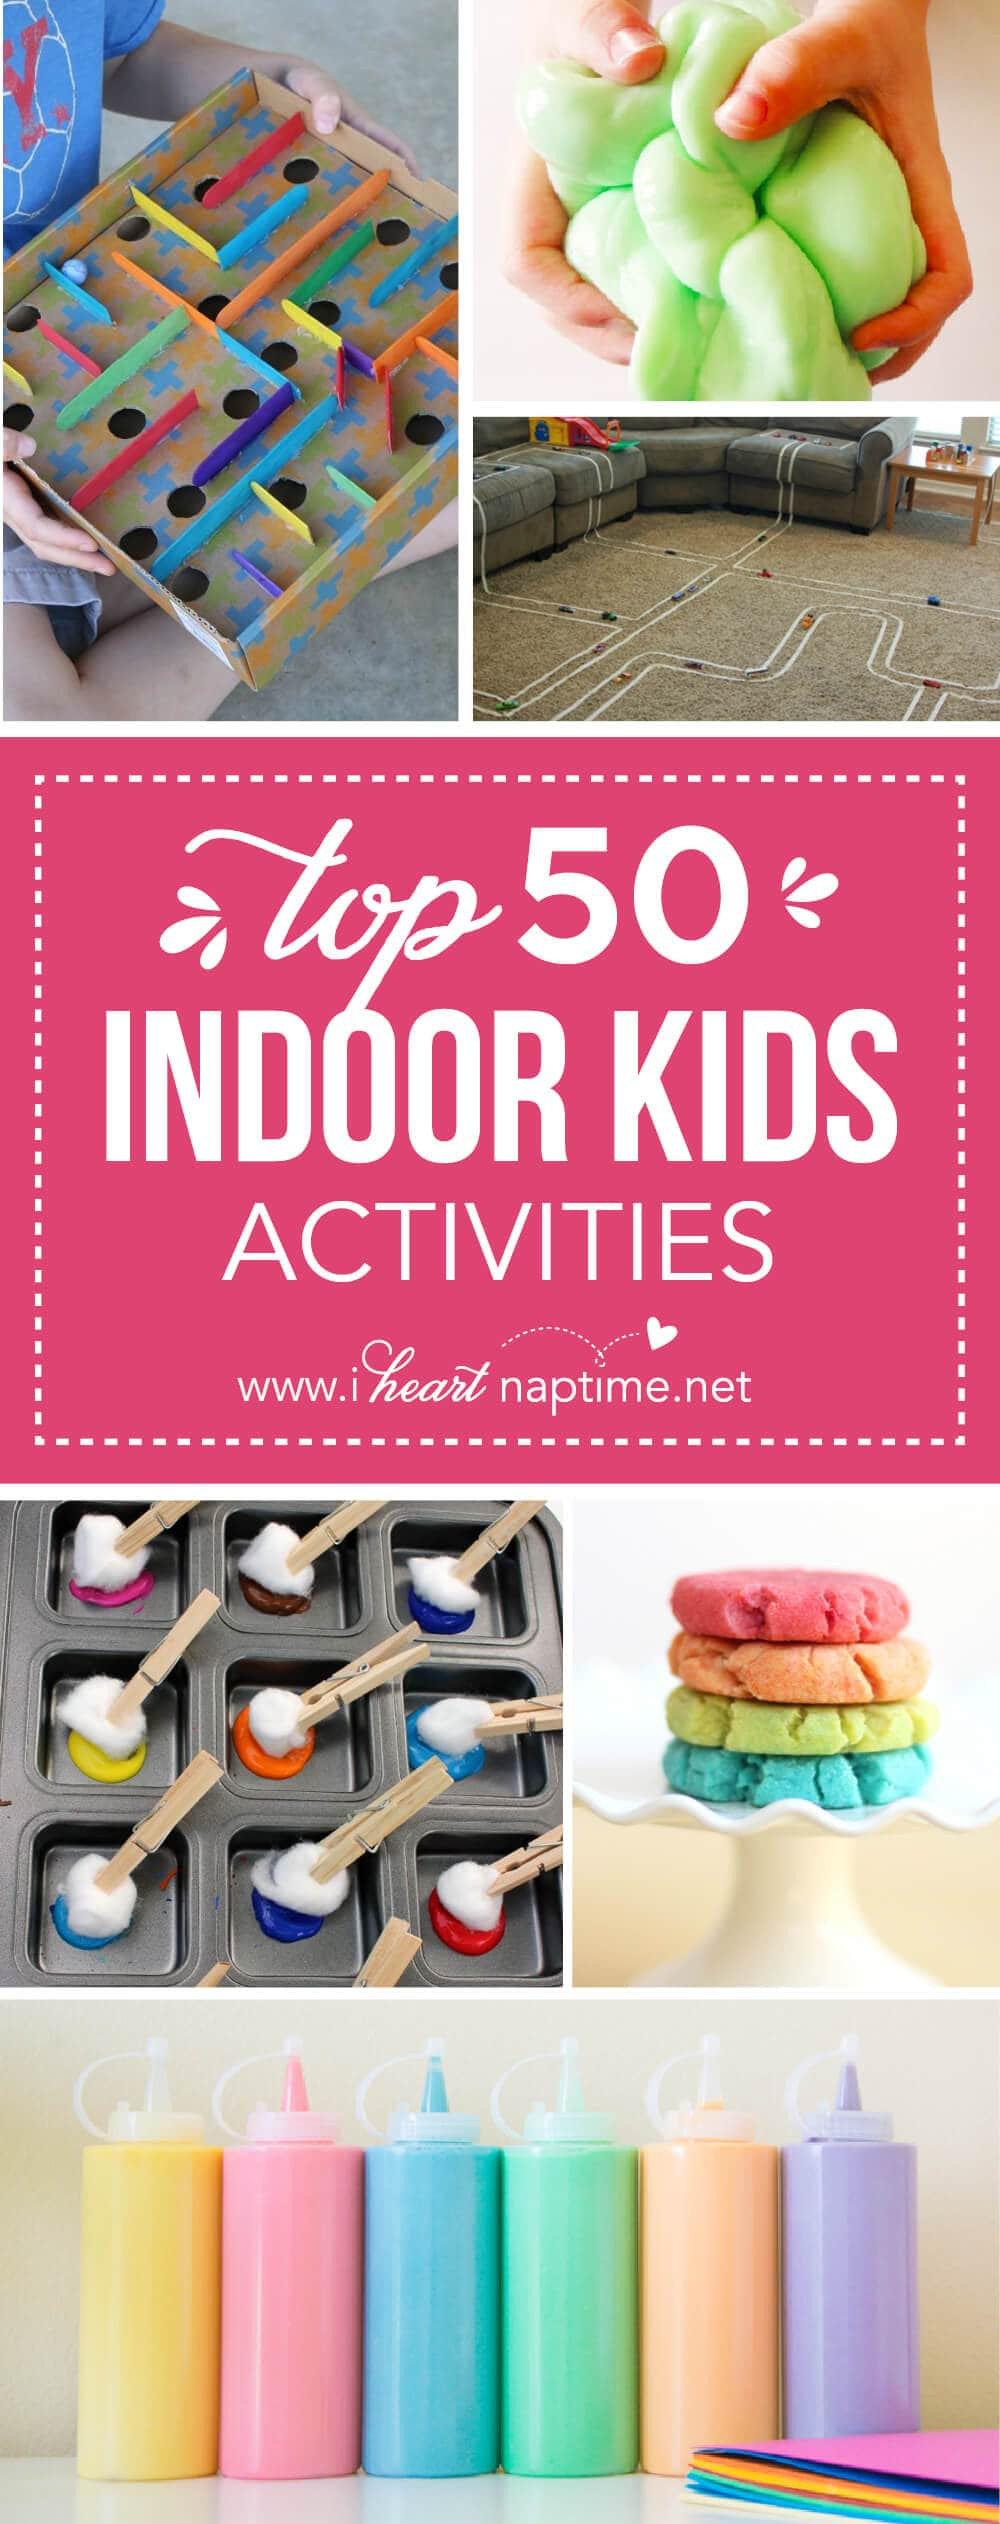 Kids Indoor Activities
 Top 50 Indoor Kids Activities I Heart Nap Time